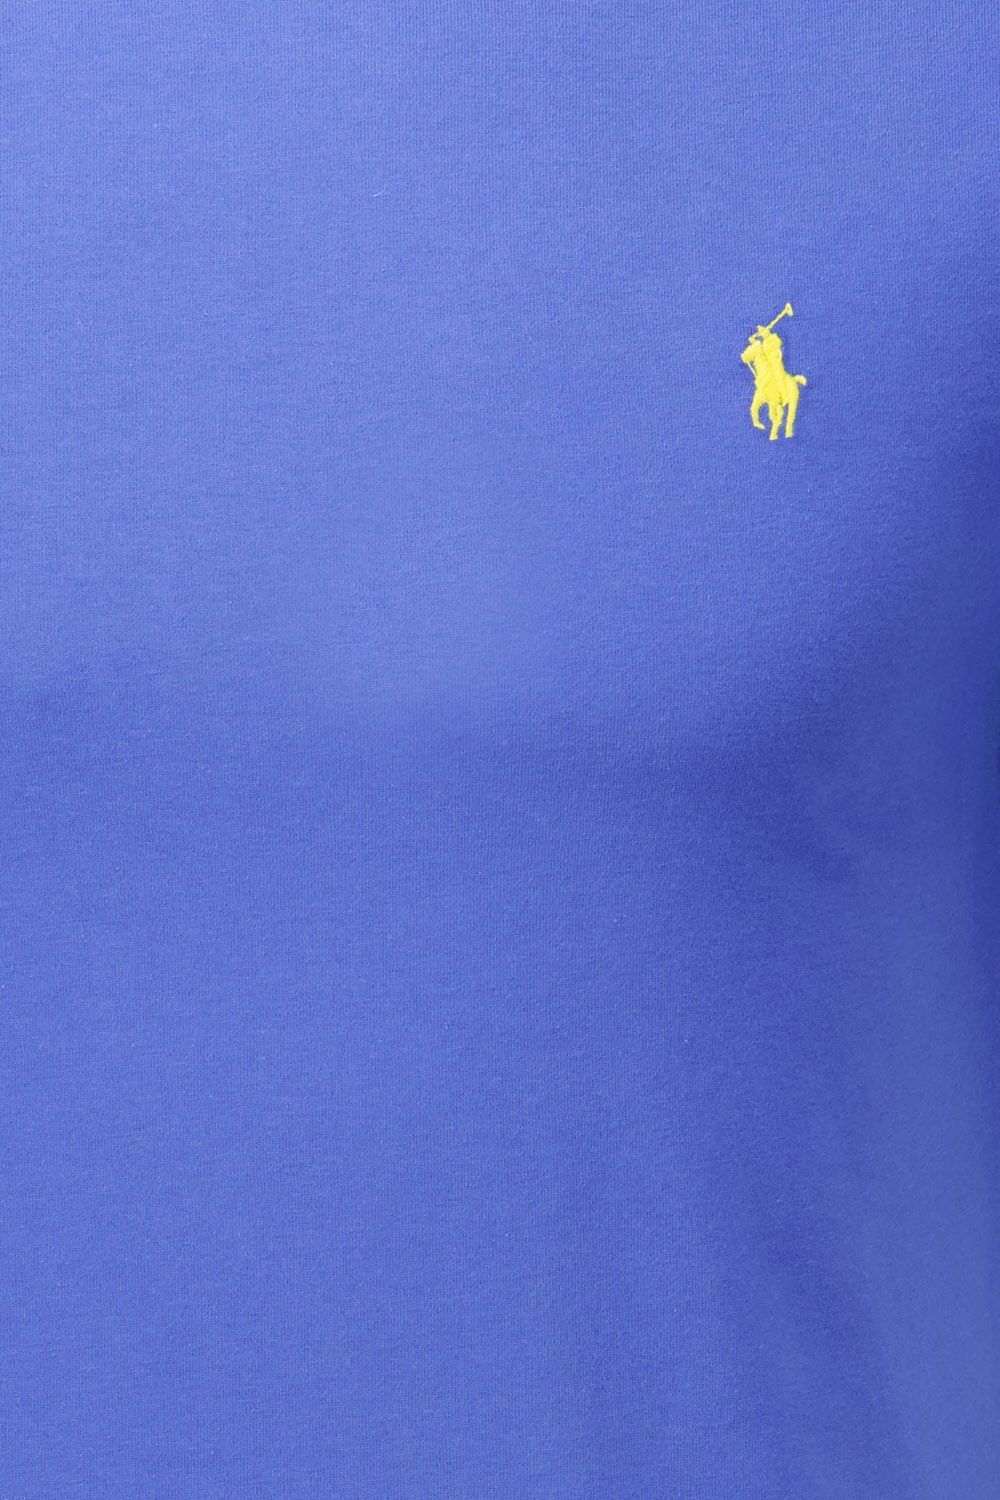 Polo Ralph Lauren T-Shirt Blauw